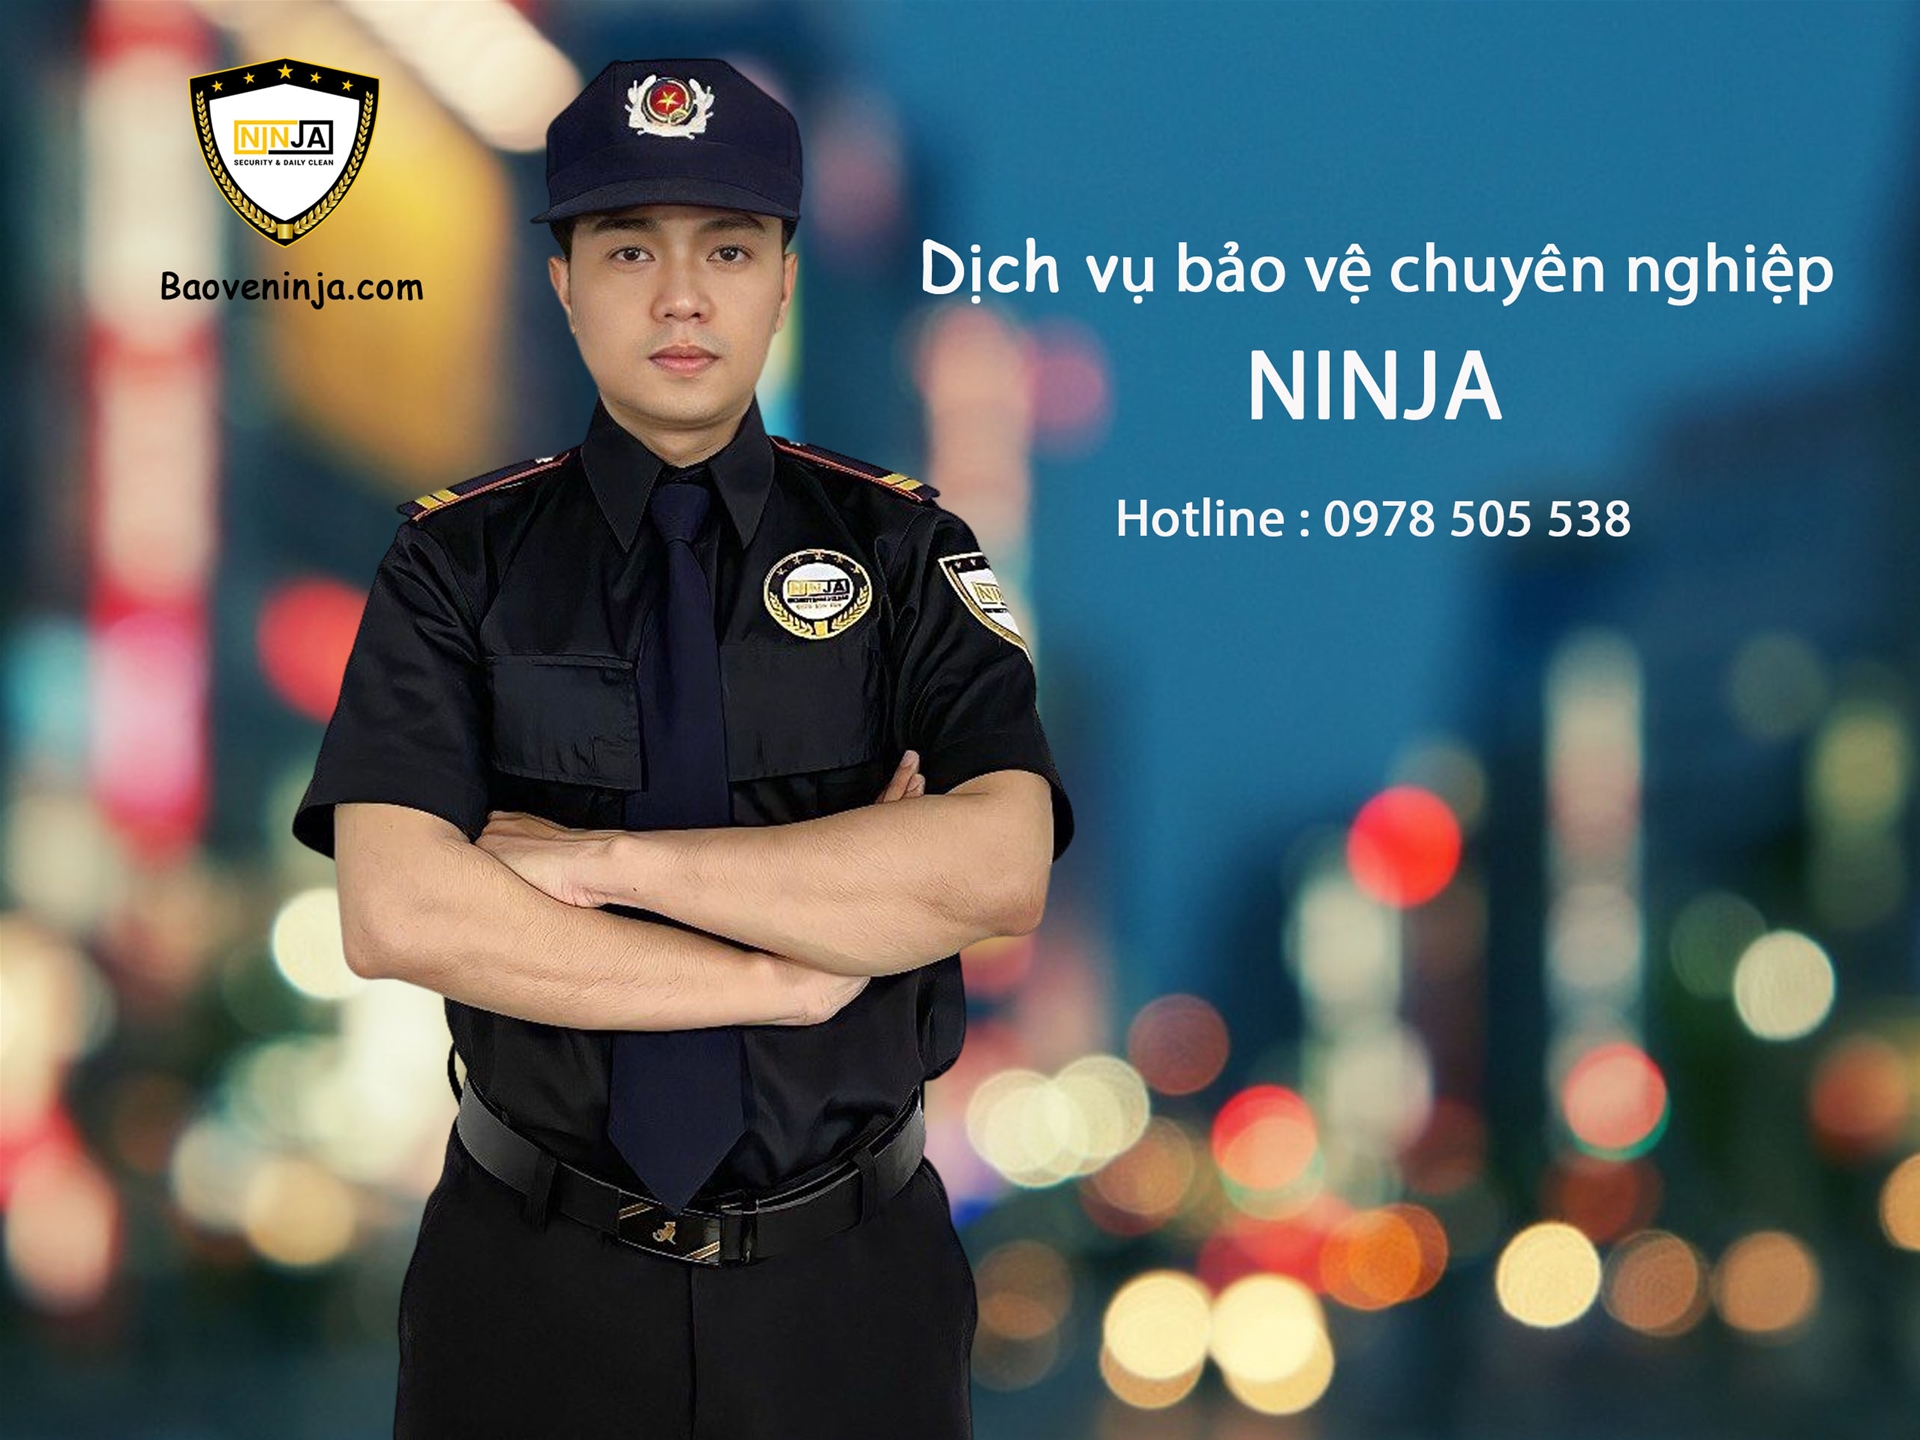 6. Cam kết của dịch vụ bảo vệ giữ xe Ninja